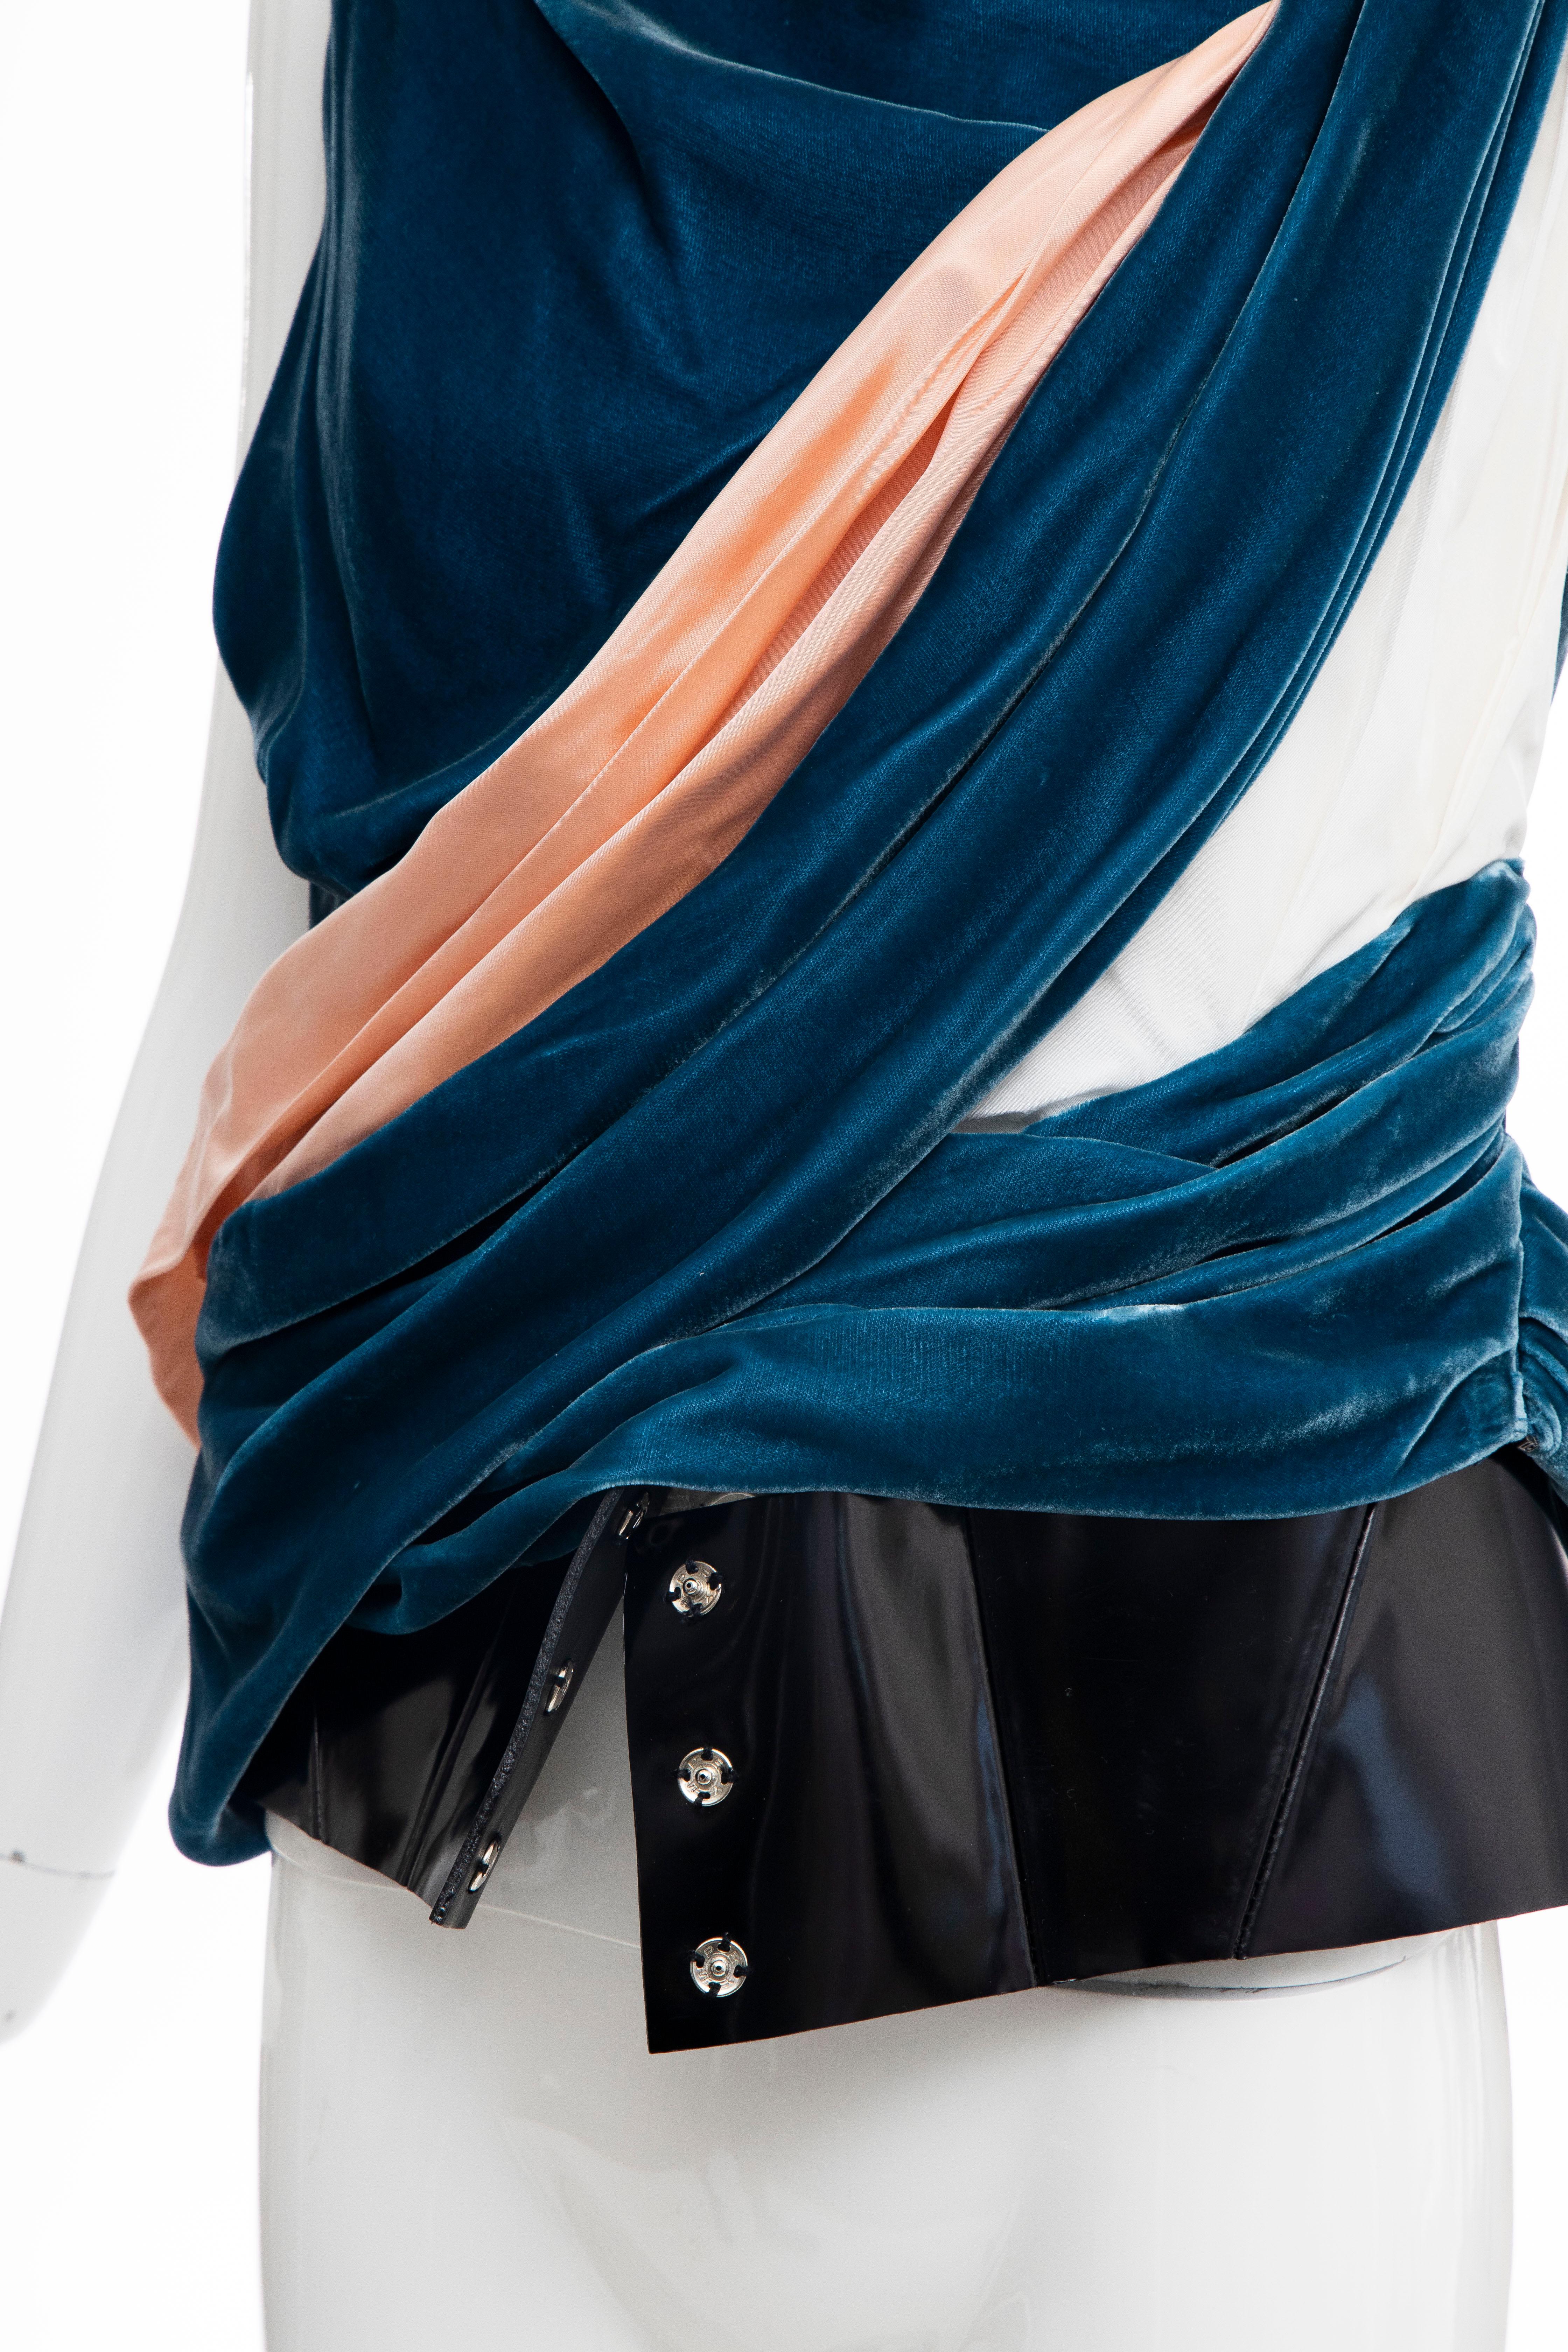 Nicolas Ghesquière for Balenciaga Runway Draped Silk Velvet Top , Fall 2008 For Sale 4